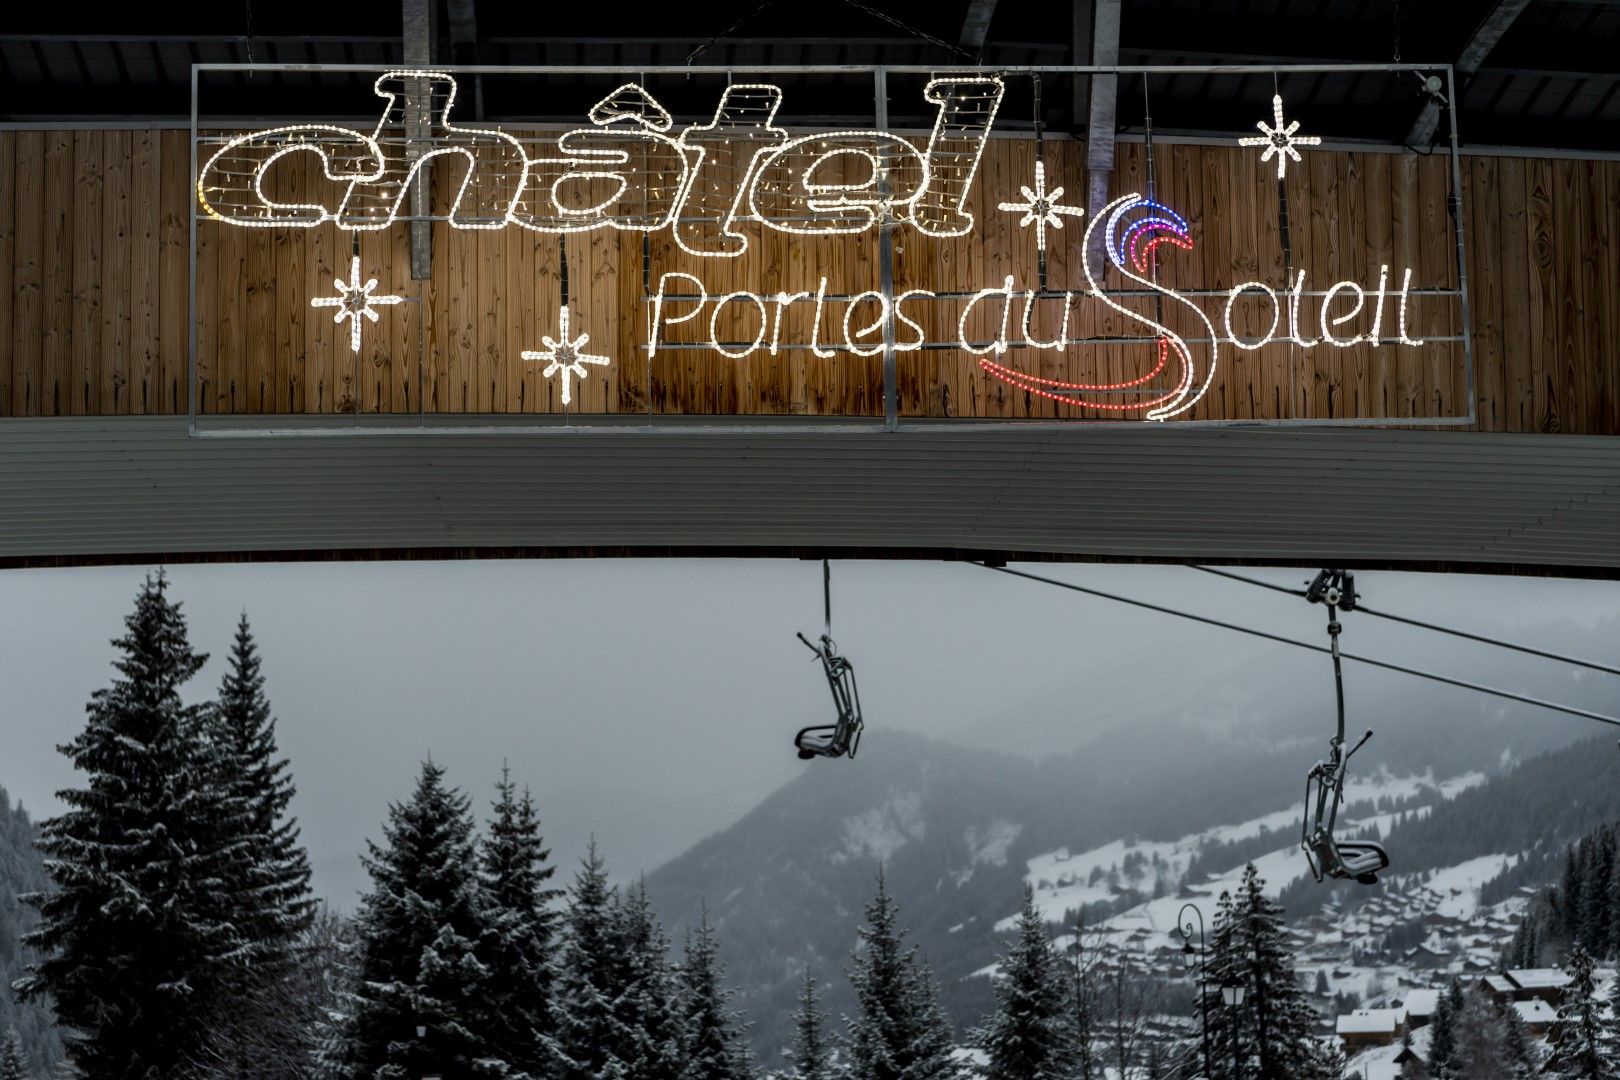 Порт дьо Солей - ски "вход към слънцето" - към 12 (повечето) свързани с лифтове и писти (с една карта) зони във Франция (където няма да се карат ски) и Швейцария (където ще може да се карат)